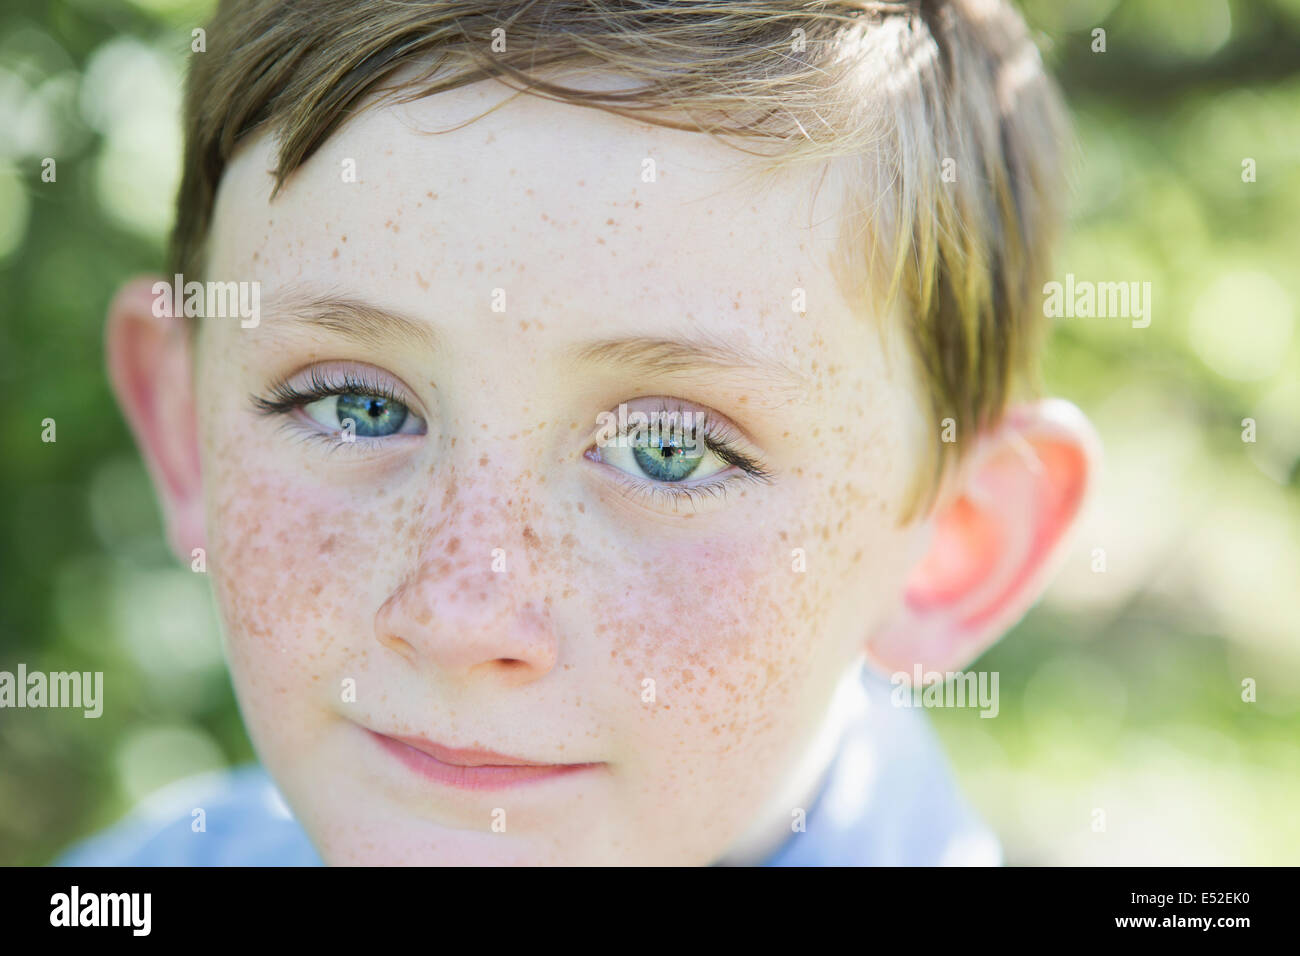 Porträt eines jungen Mannes mit roten Haaren, blauen Augen und Sommersprossen auf der Nase. Stockfoto